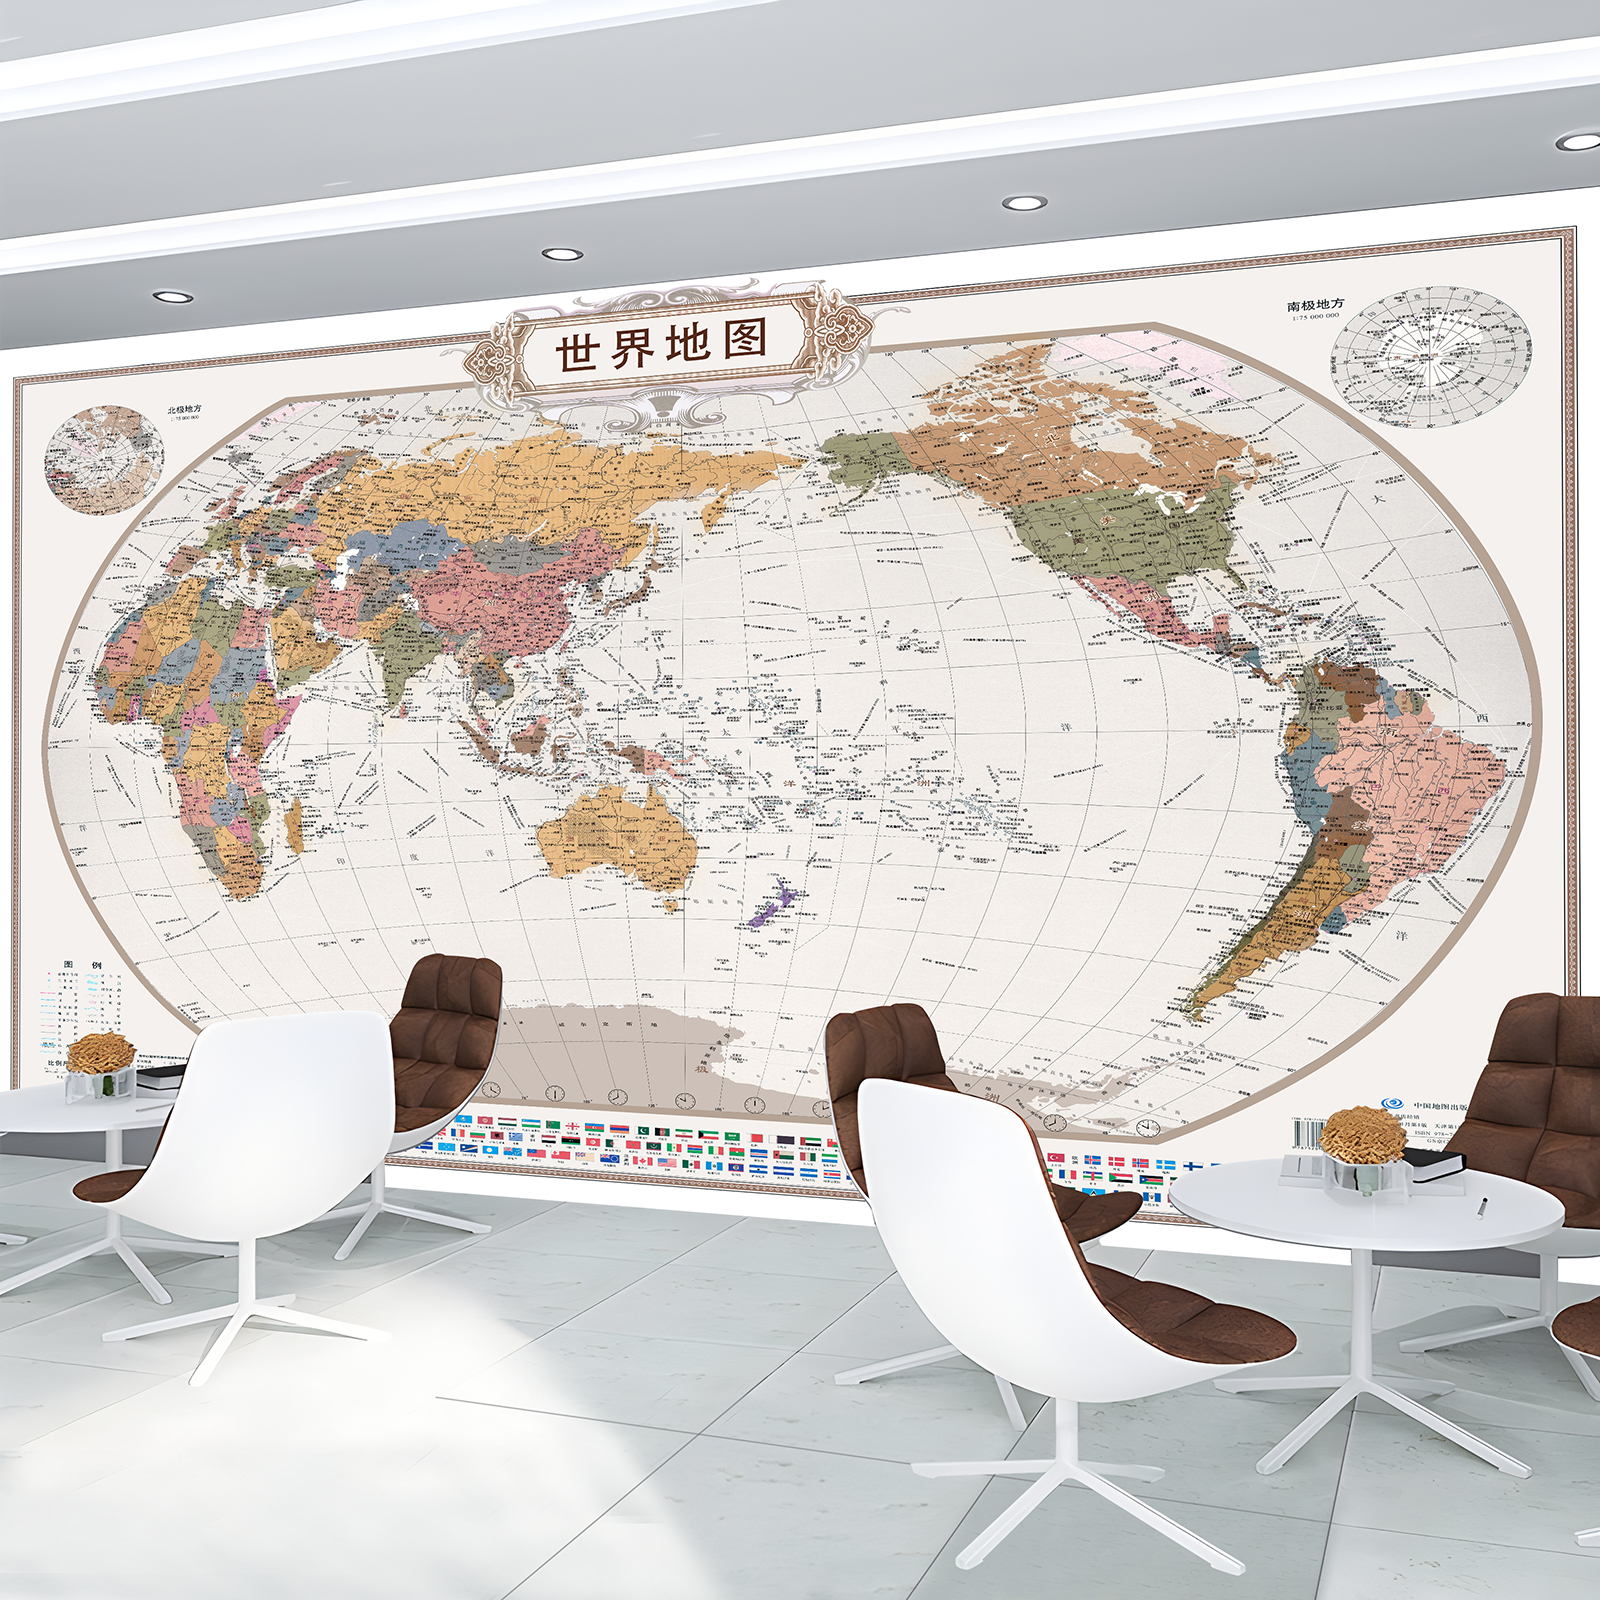 新版中国标准地图画布各省份市县区域大尺寸画芯世界地图装饰定制